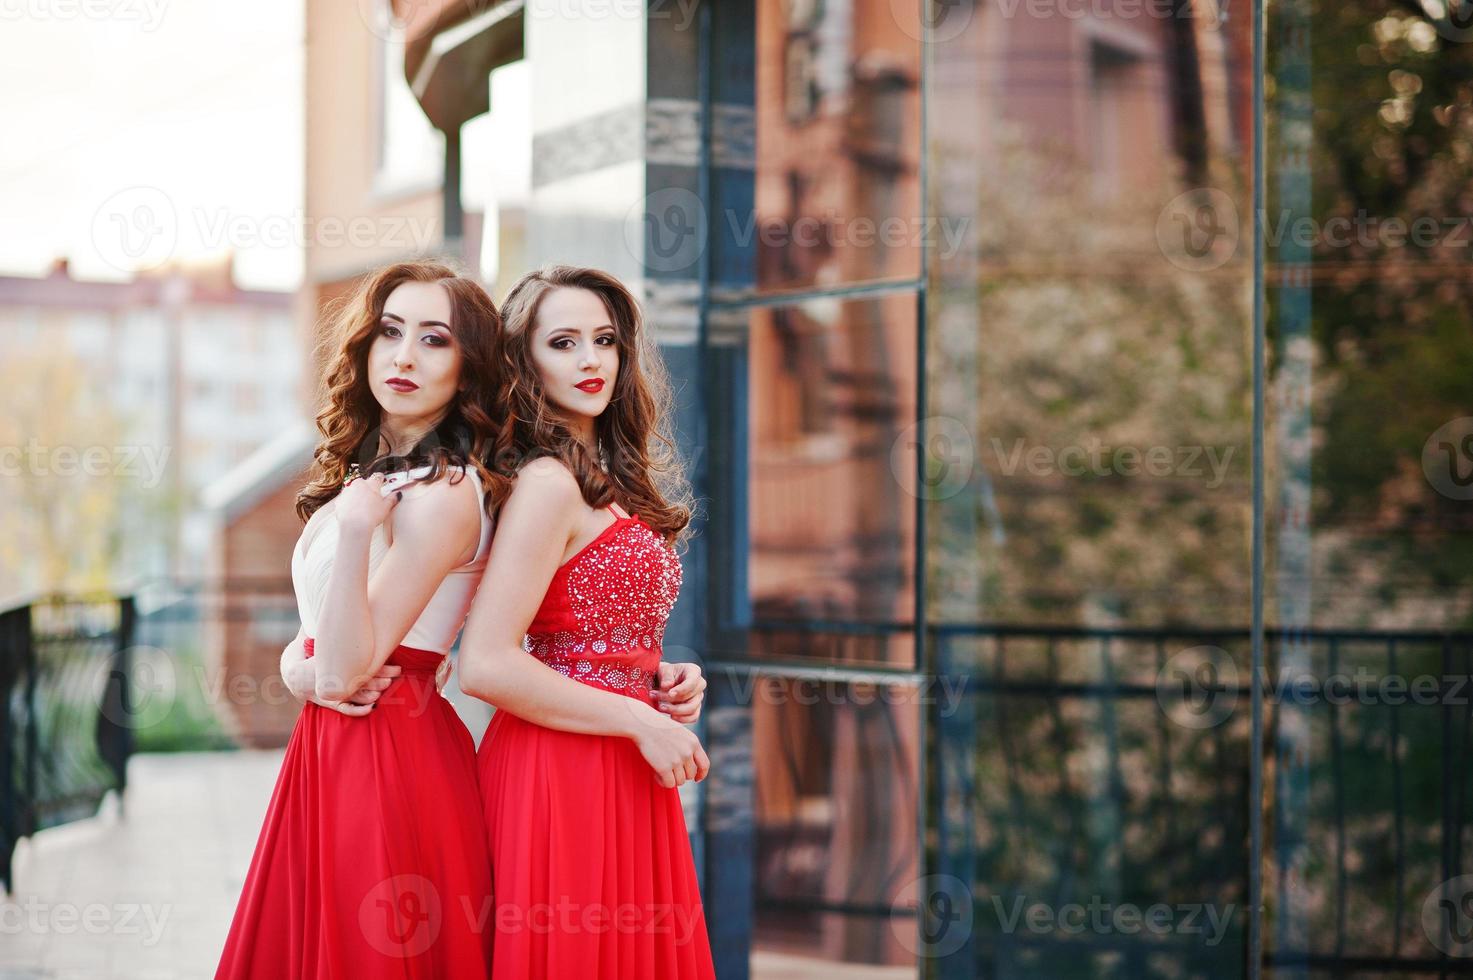 retrato de dos chicas de moda con vestido de noche rojo posado en la ventana de espejo de fondo de un edificio moderno foto